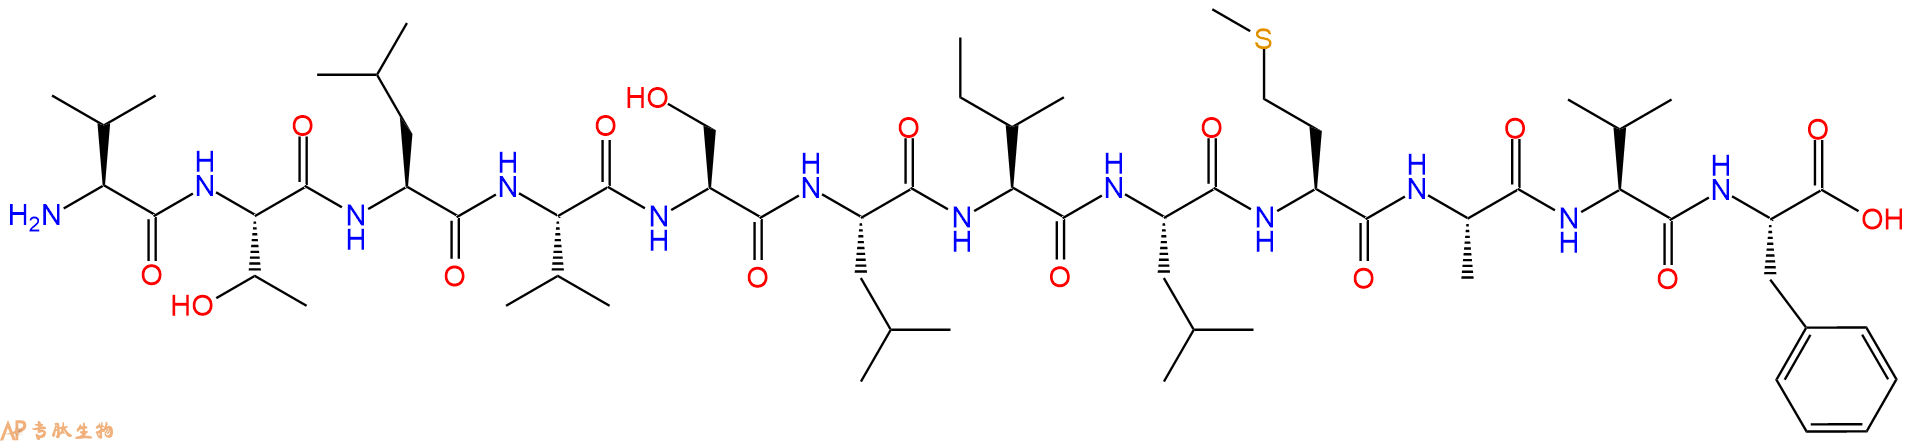 专肽生物产品H2N-Val-Thr-Leu-Val-Ser-Leu-Ile-Leu-Met-Ala-Val-Ph